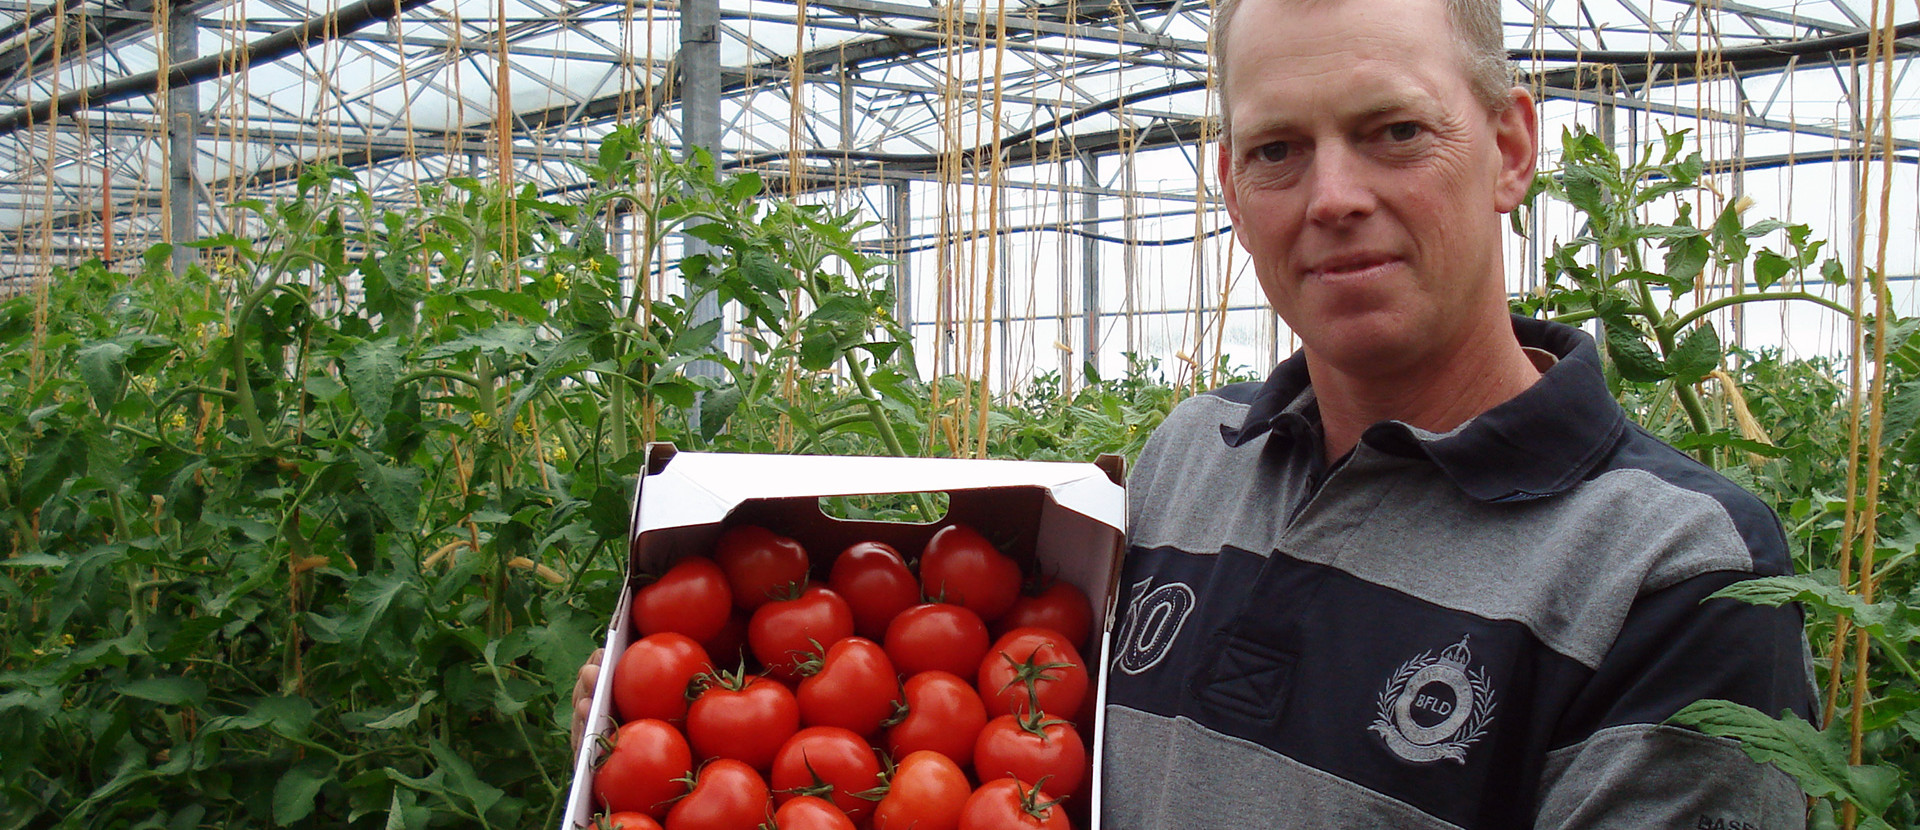 Betriebsleiter hält eine Kiste reifer Tomaten in einer Pappkiste zwischen Tomatenpflanzreihen in einem Gewächshaus